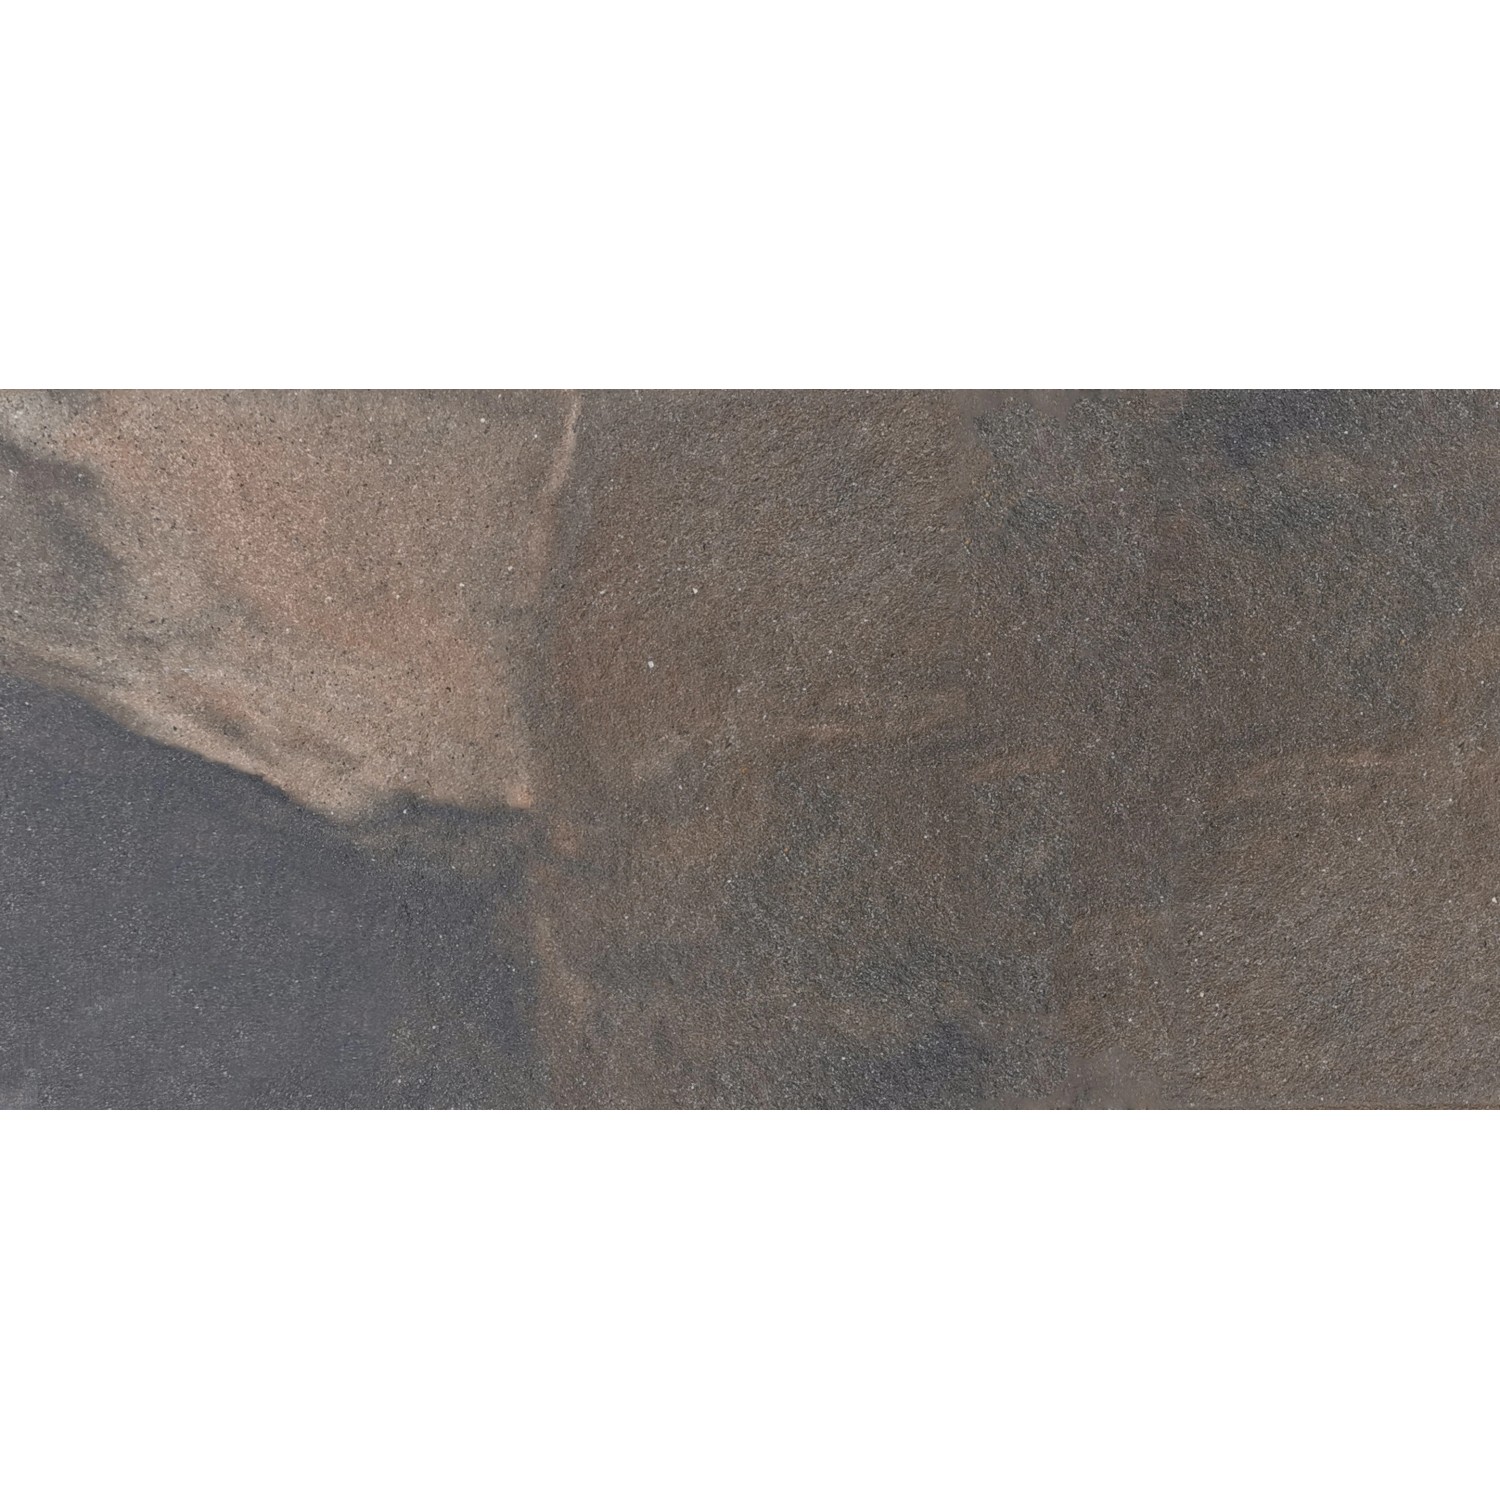 Diephaus Terrassenplatte Finessa Marrone 80 cm x 40 cm x 4 cm